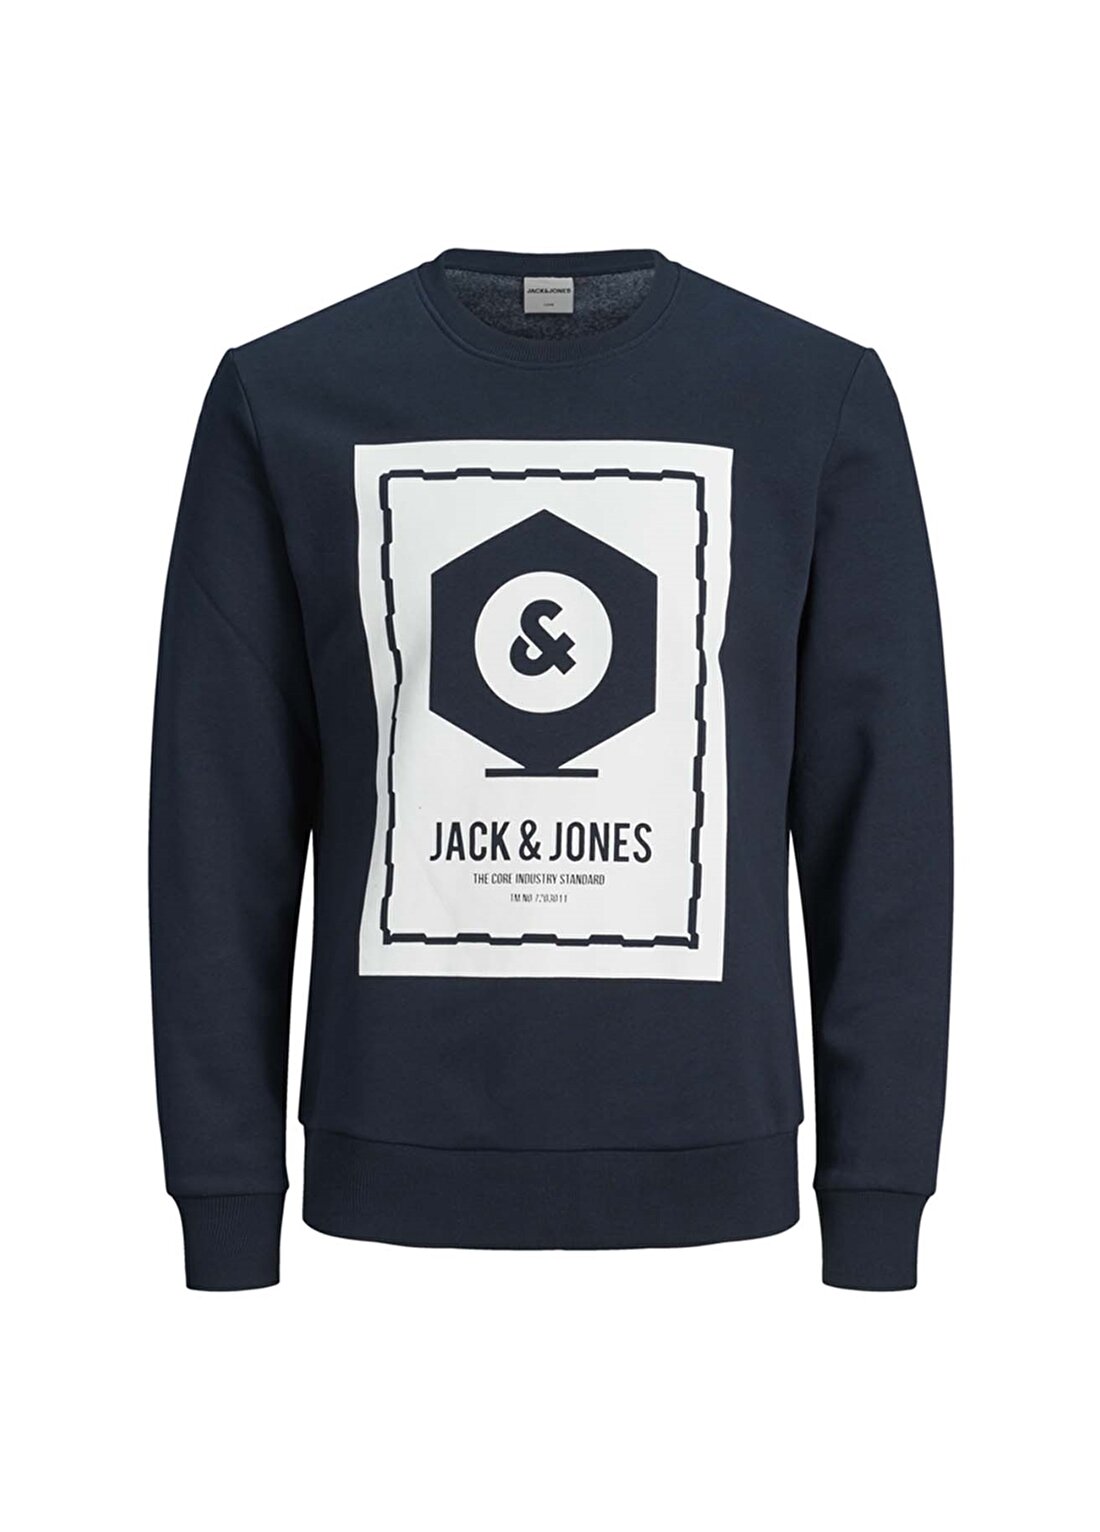 Jack & Jones Known Sweatshirt